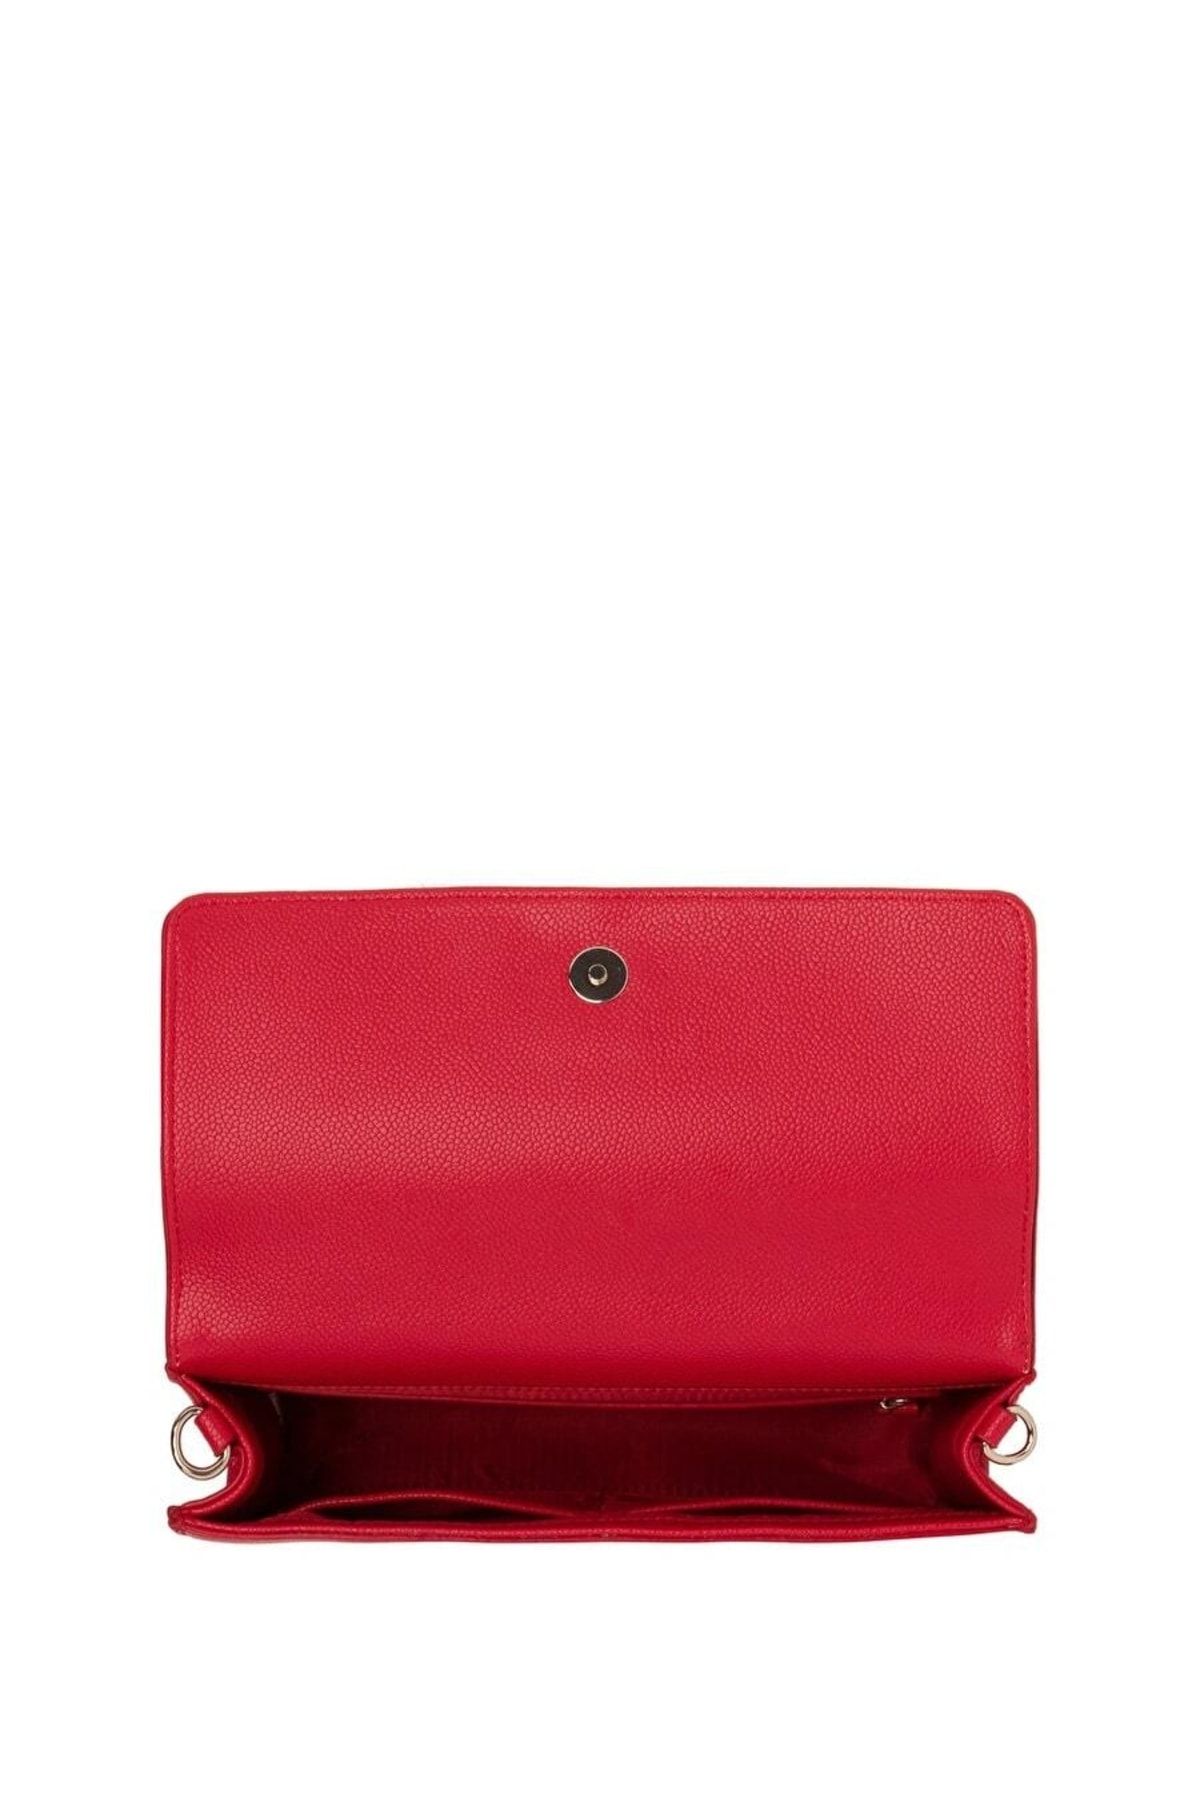 Valentino Gym Bag - Red - Plain - Trendyol